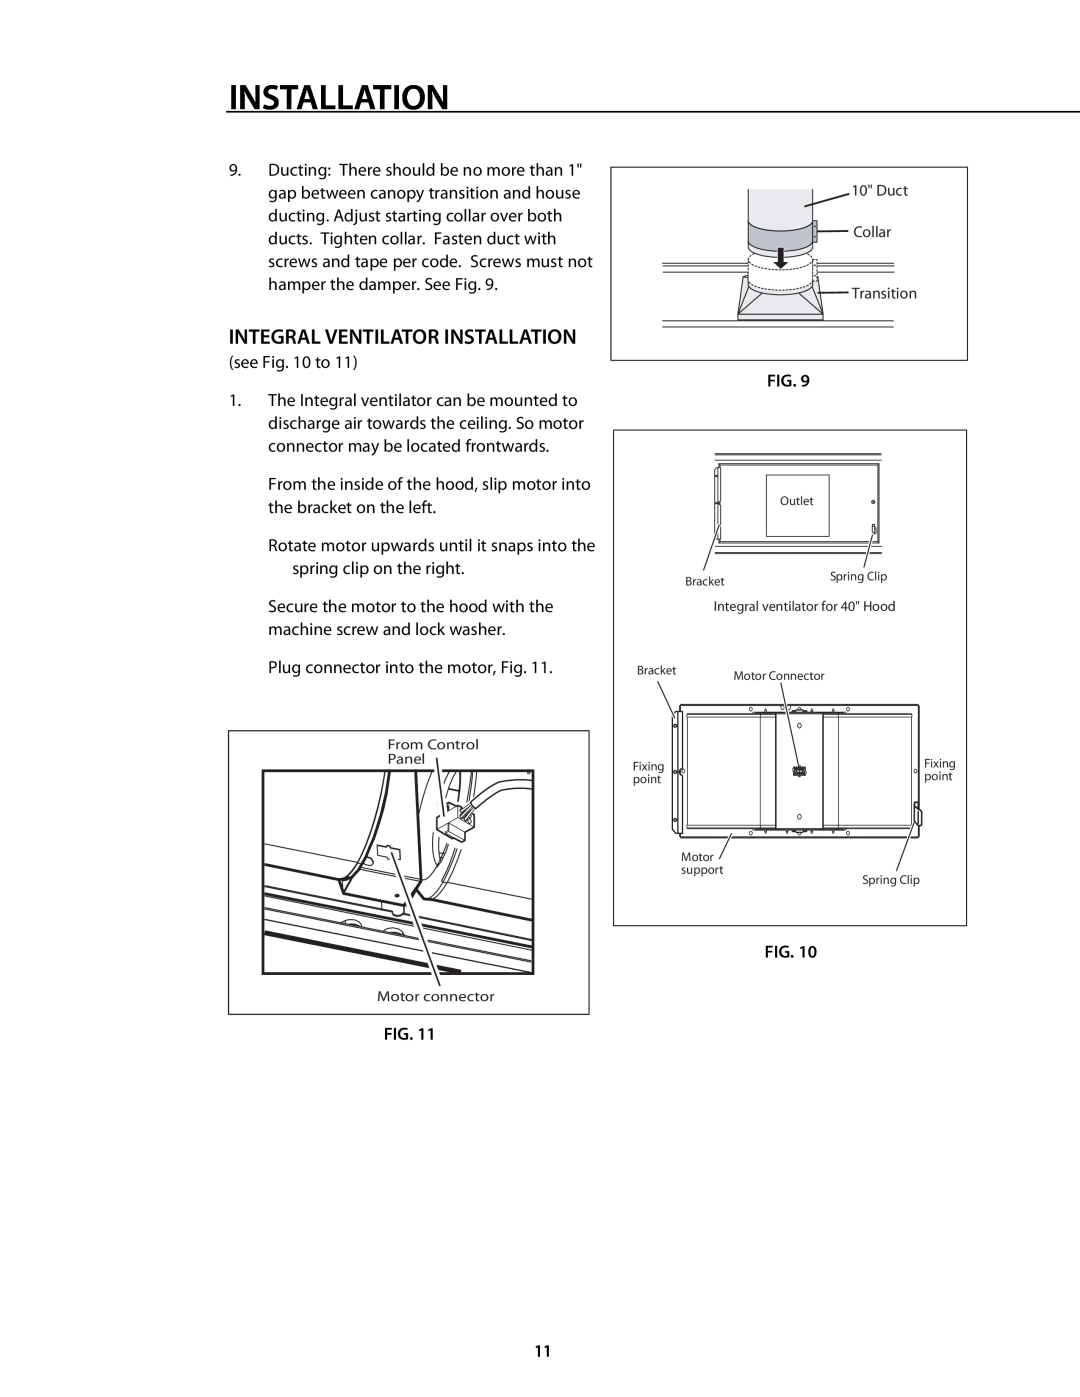 DCS 221712 manual Integral Ventilator Installation 